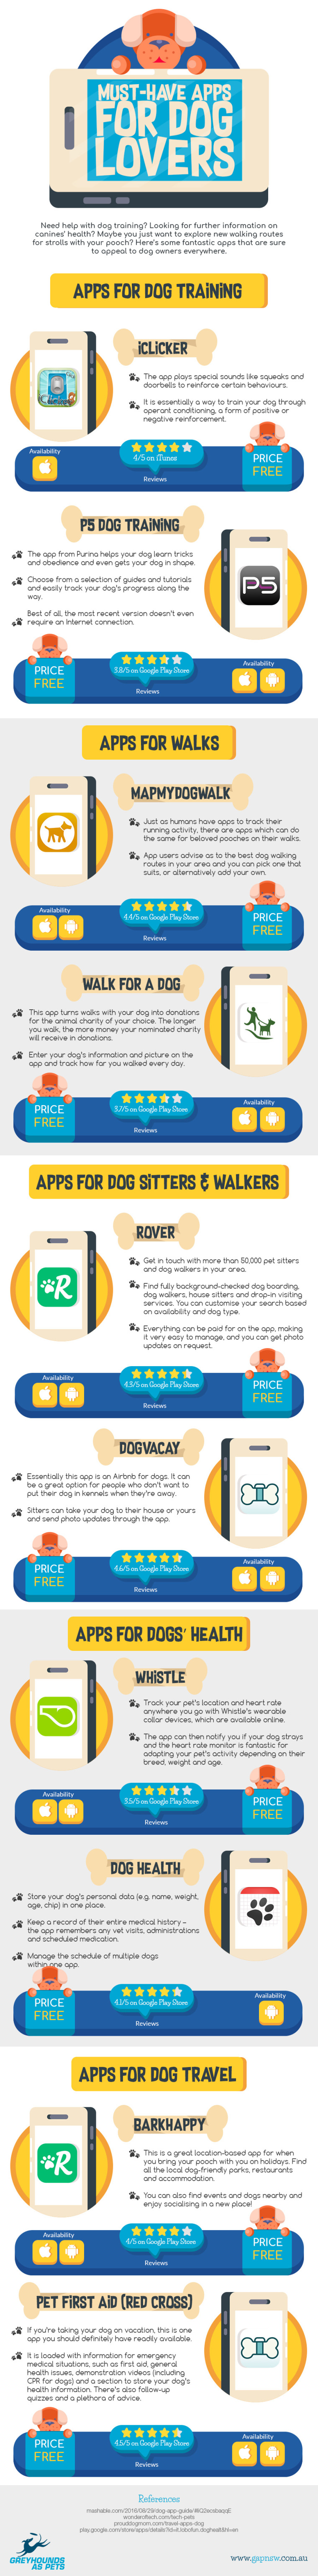 Infografía: Las mejores apps para amantes de los perros